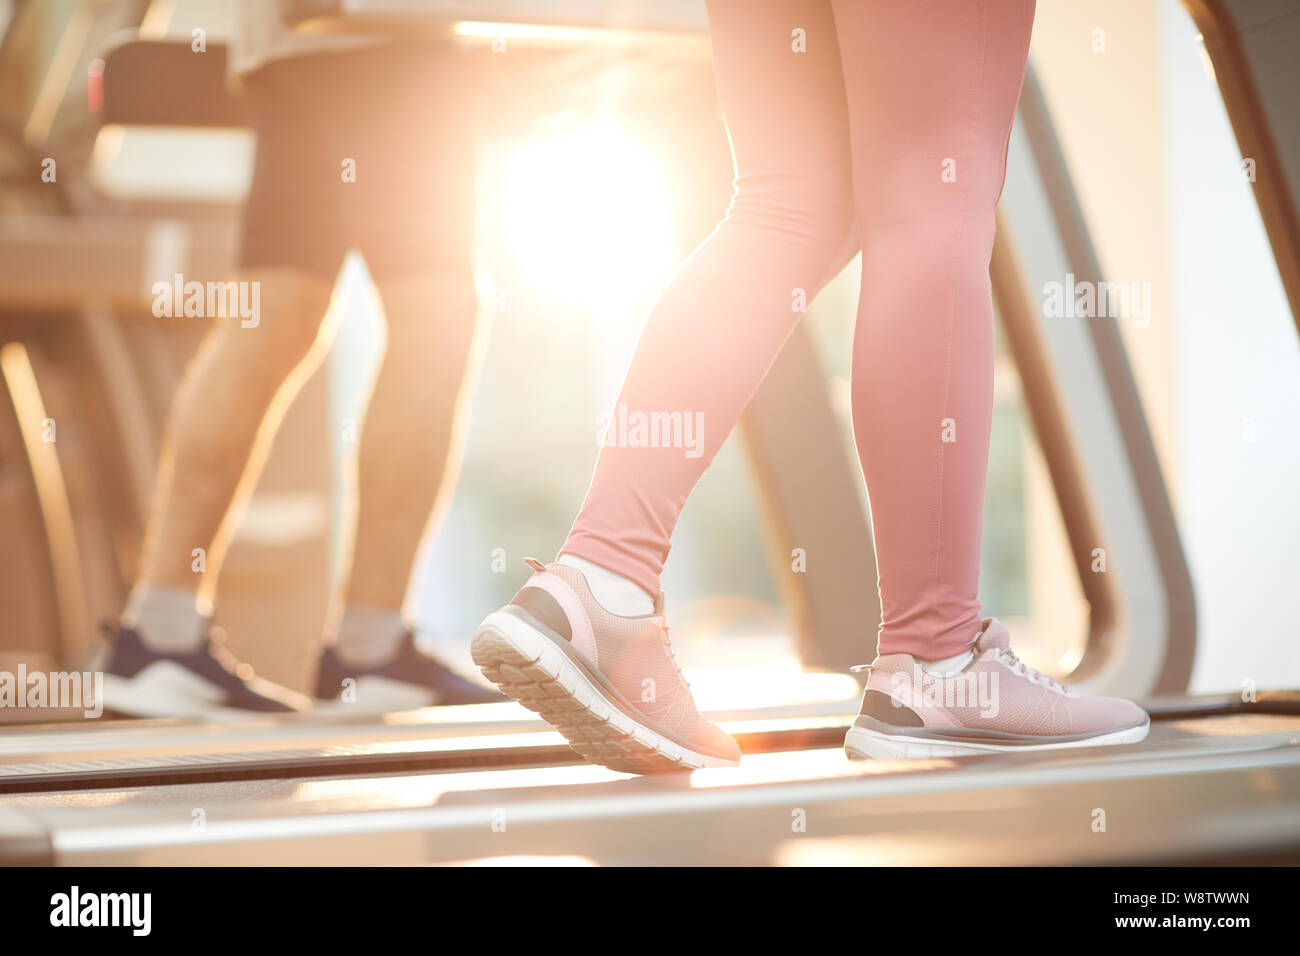 Antecedentes deportivos de personas corriendo en cintas de correr en el gimnasio iluminado por la luz solar, espacio de copia Foto de stock